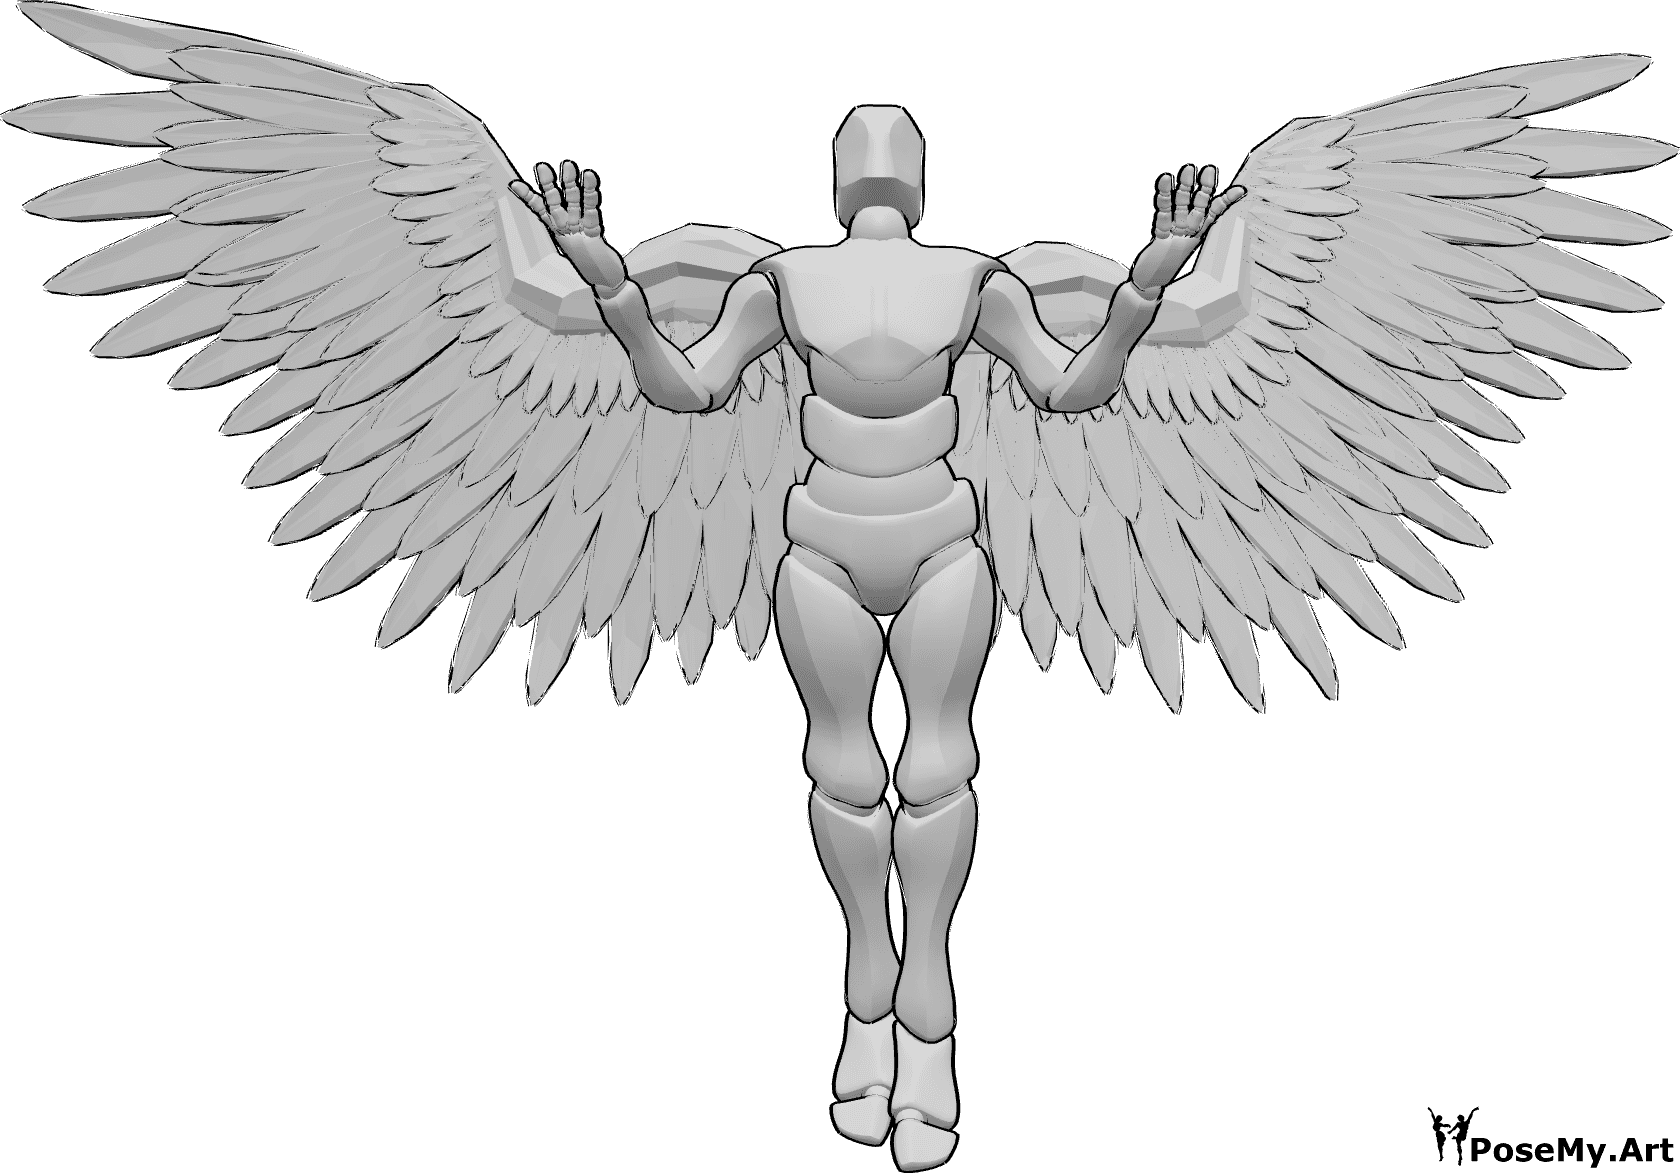 Referência de poses- Pose masculina com asas de anjo - Homem com asas de anjo está a voar para cima, levantando as mãos e olhando para cima